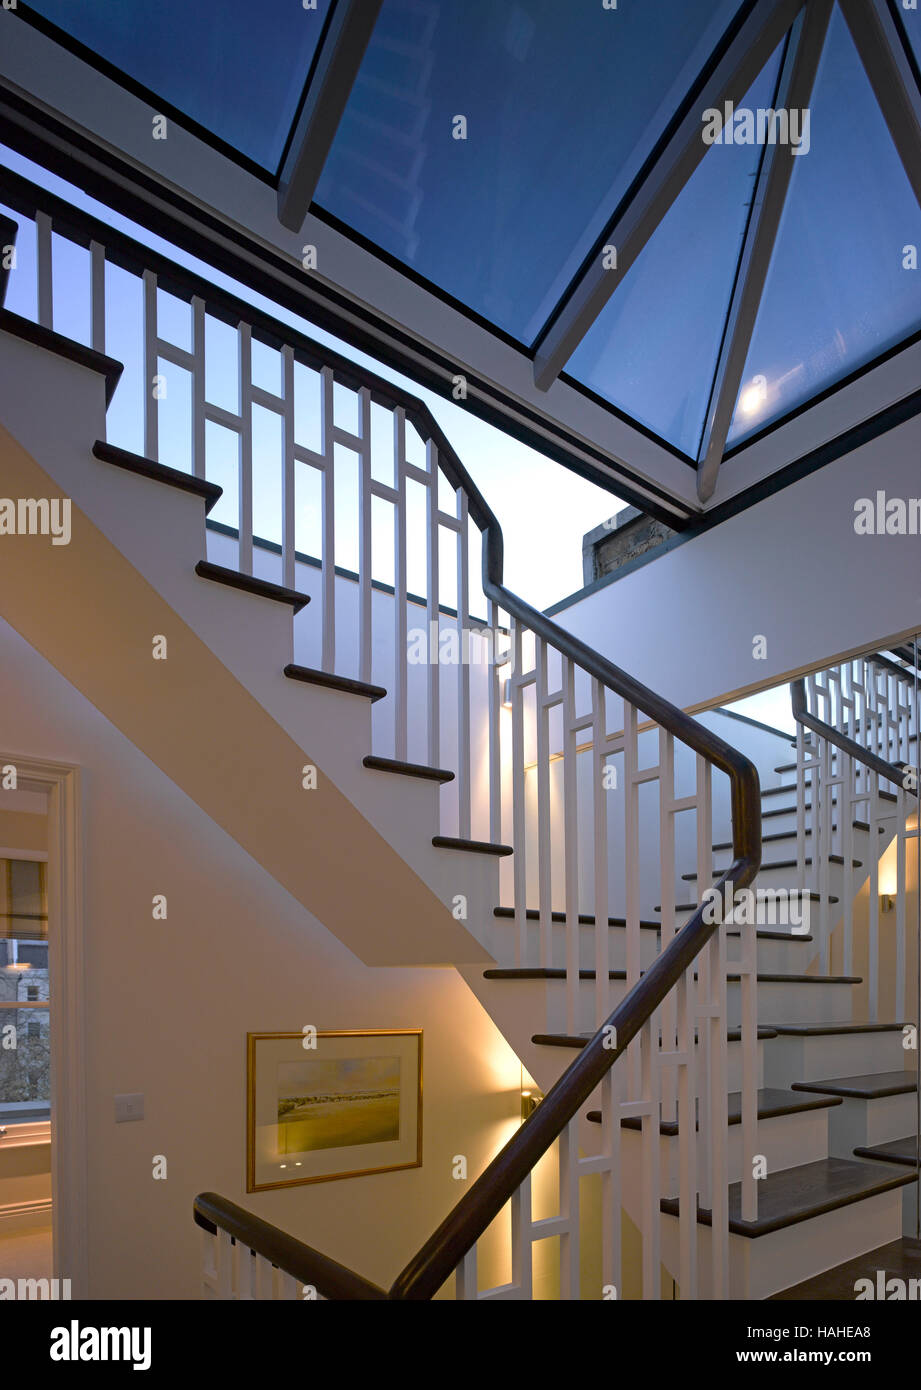 Vue intérieure sur palier supérieur avec toit en verre. Stock d'architecture, Divers, Royaume-Uni. Architecte : n/a, 2016. Banque D'Images